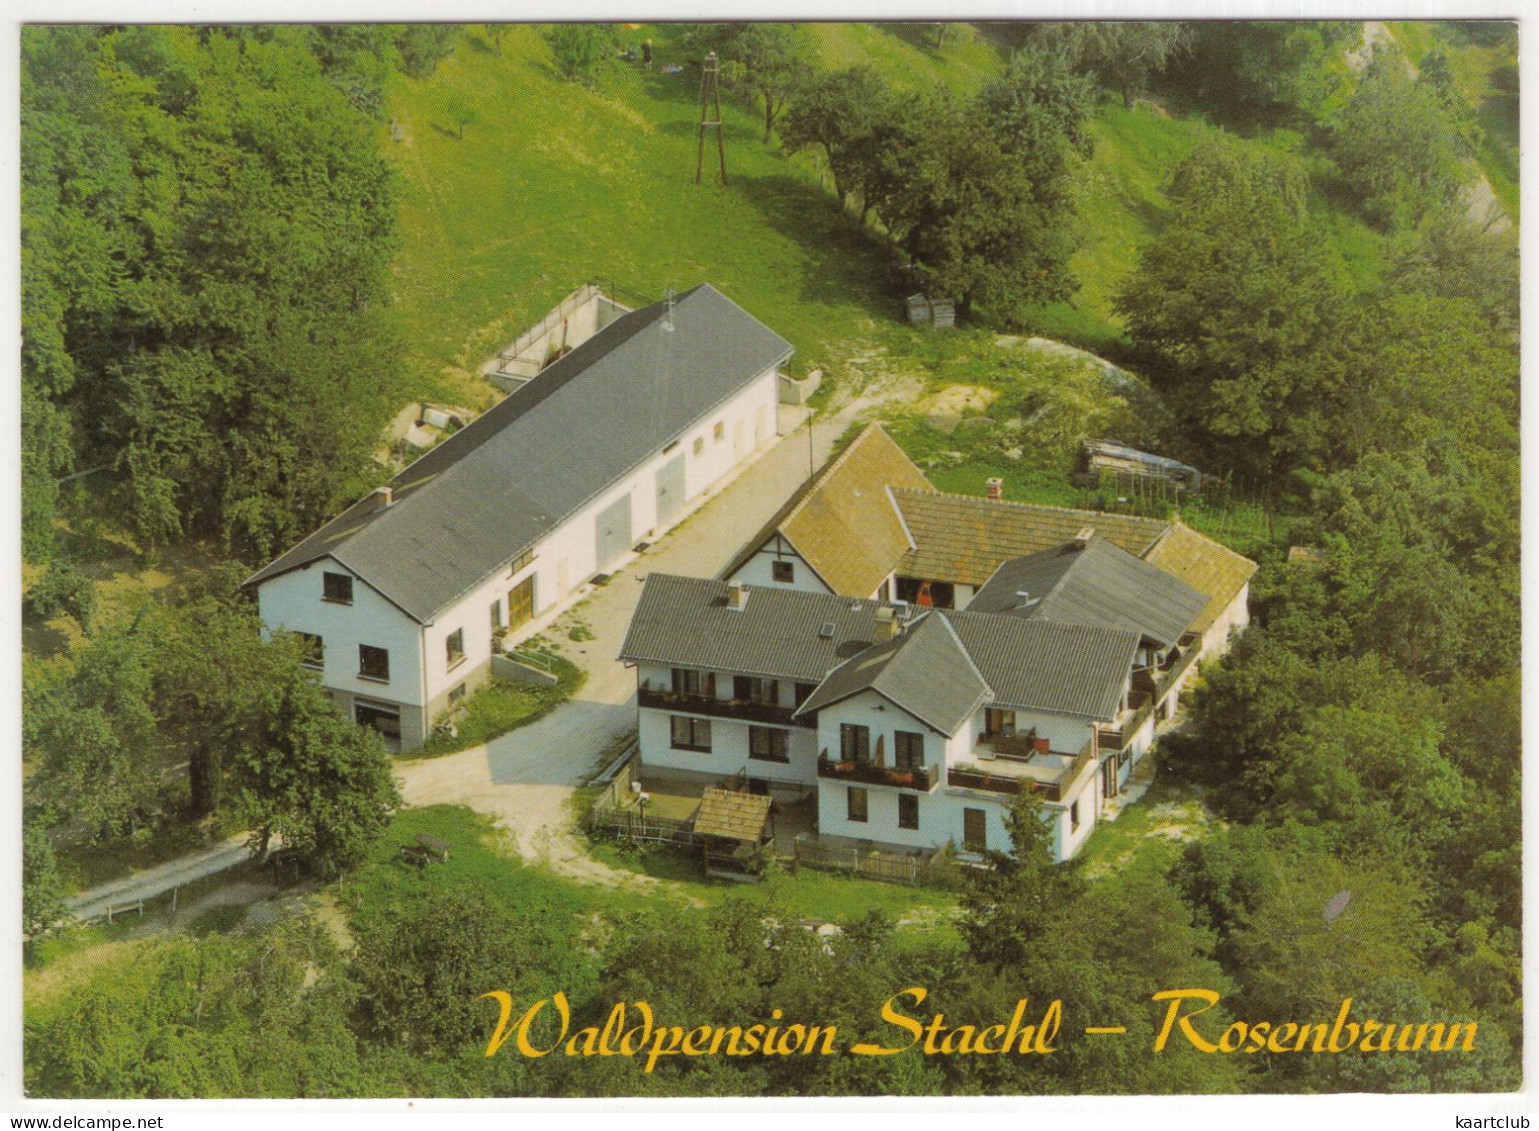 Waldpension 'Stachl', Rosenbrunn, Hochwolkersdorf - (Österreich/Austria) - Wiener Neustadt